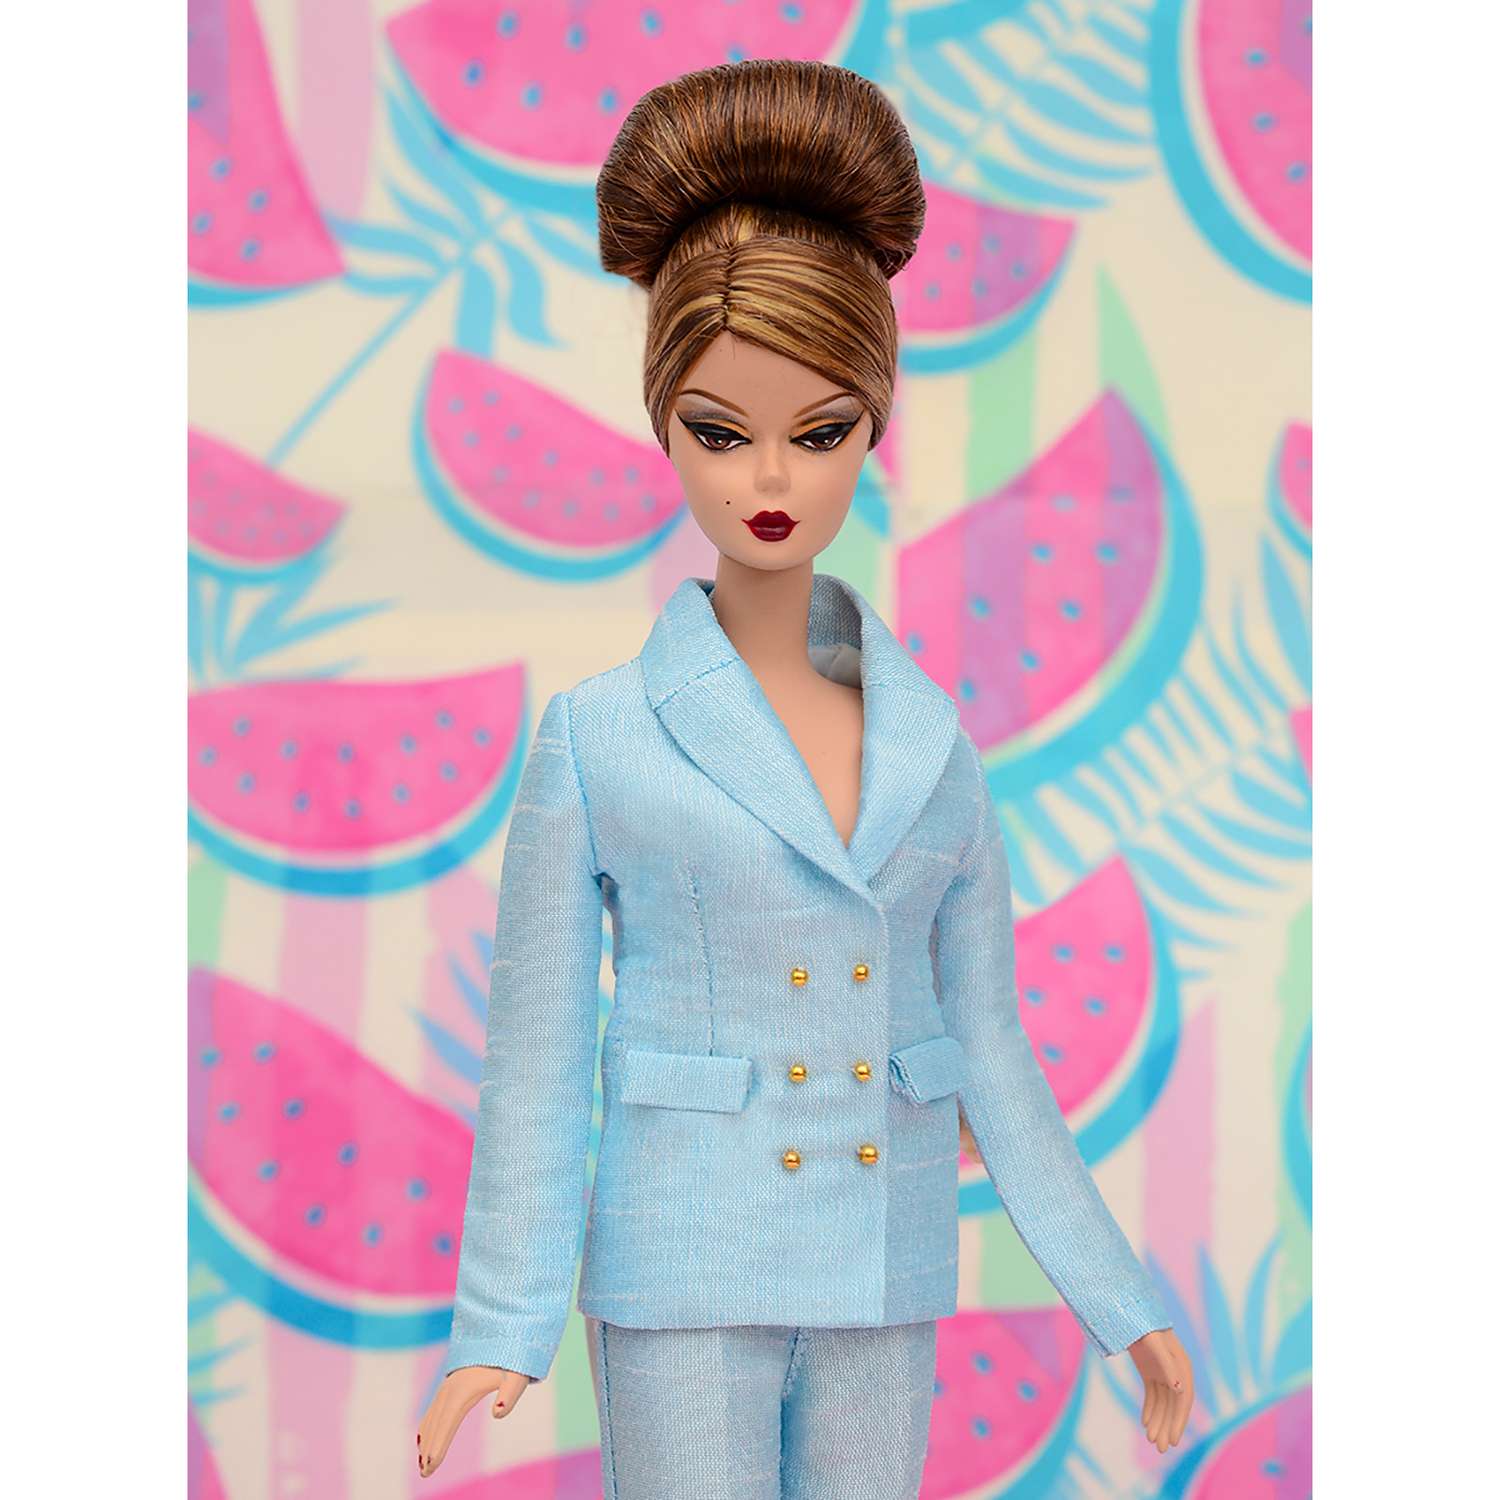 Шелковый брючный костюм Эленприв Небесно-голубой для куклы 29 см типа Барби FA-011-15 - фото 7